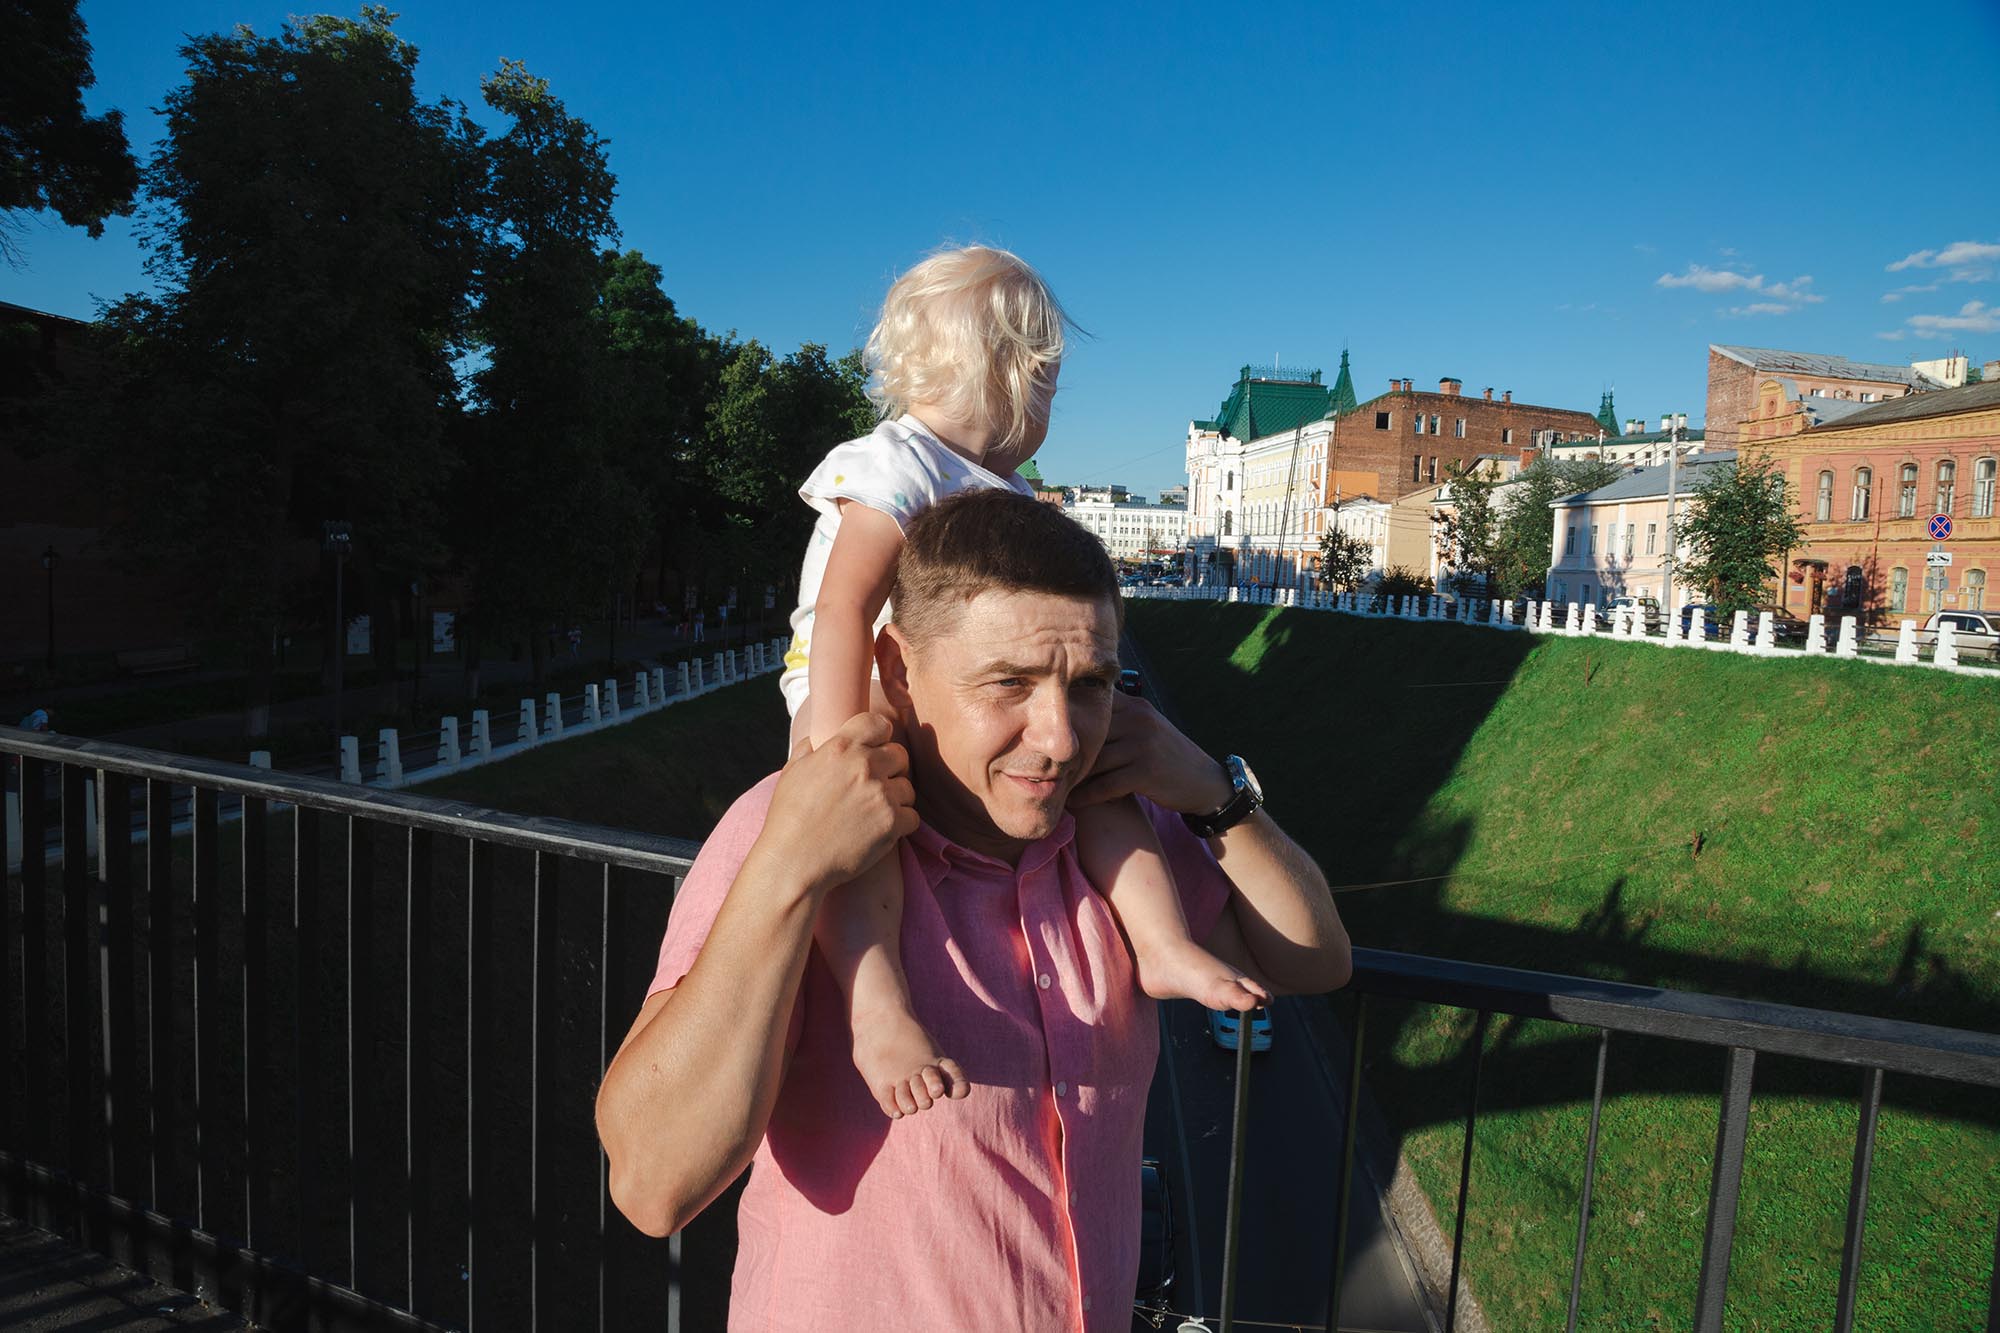 Денис возвращается с прогулки с семьей Фото: Алексей Шевцов для ТД